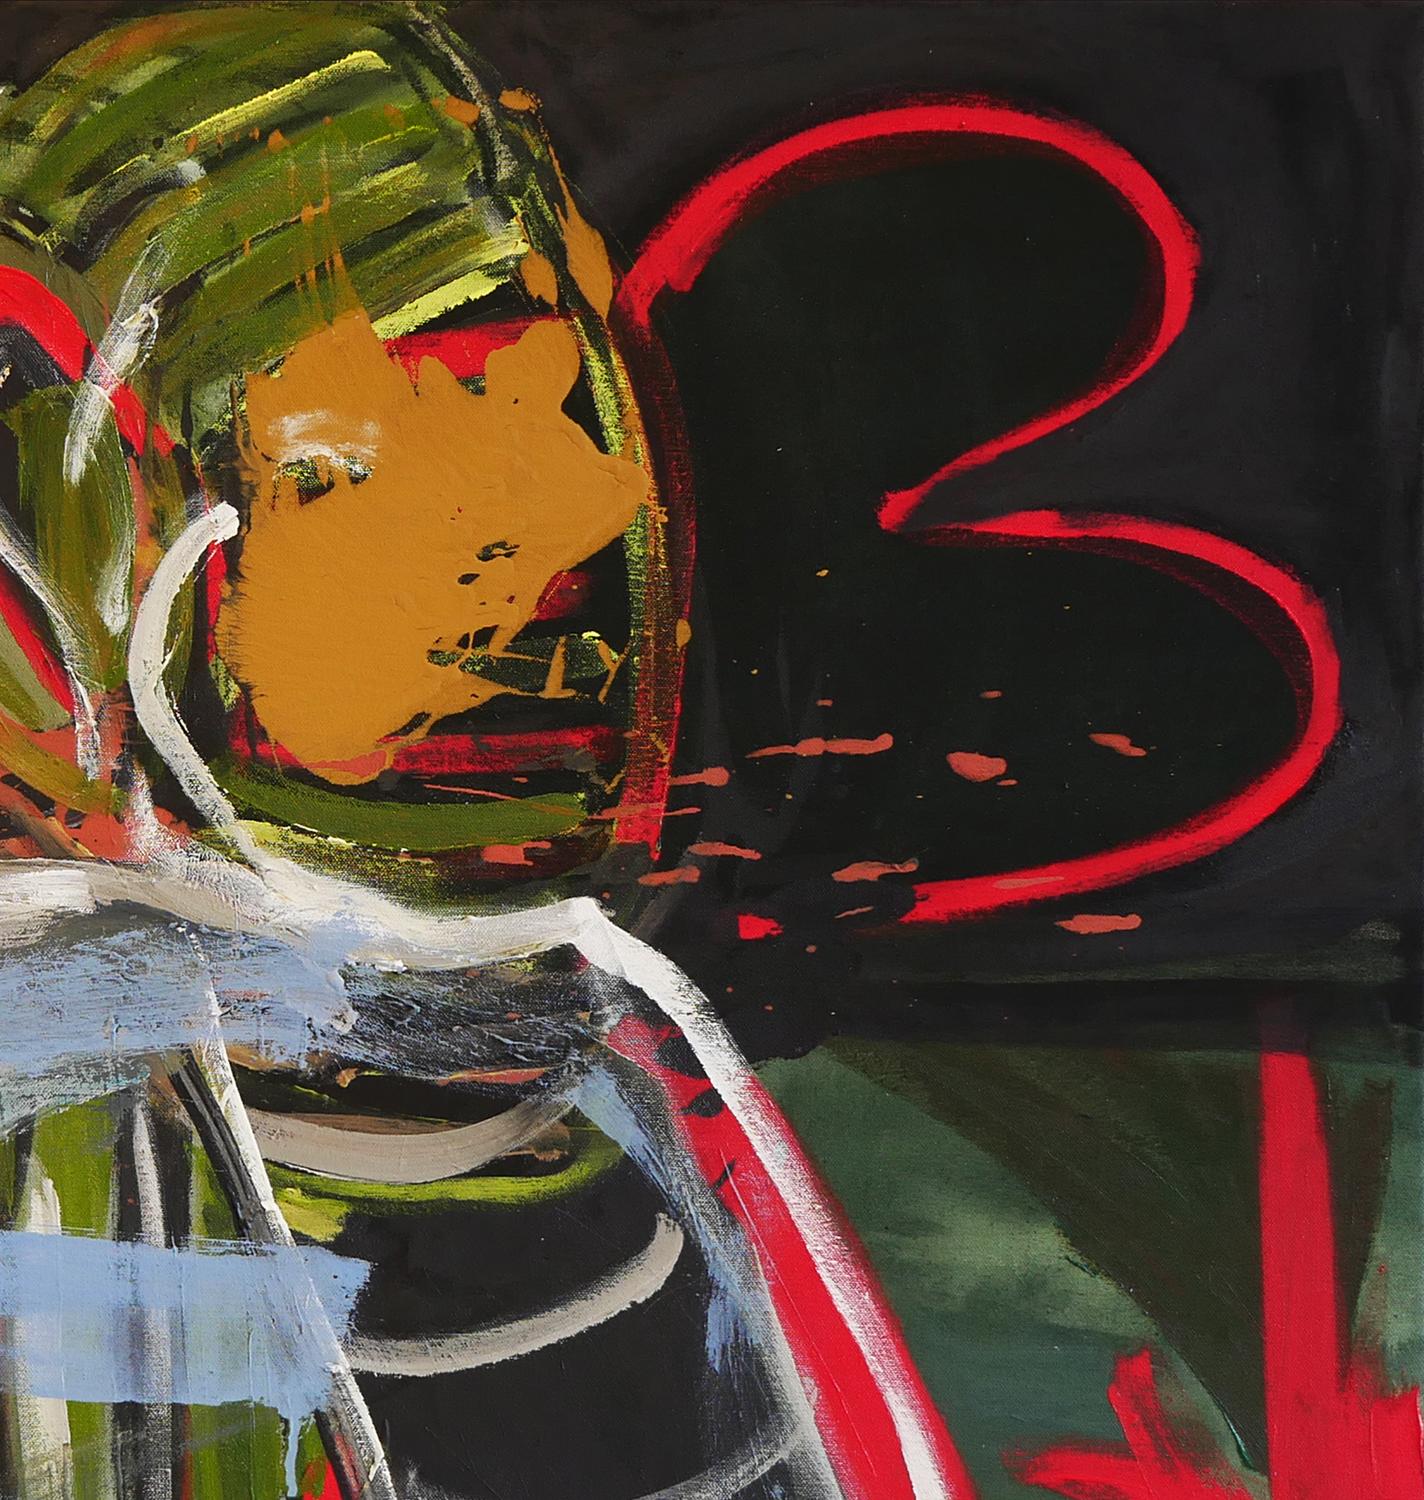 Zeitgenössische abstrakte Malerei des Künstlers Tod Bailey aus Houston. Derzeit zu sehen in der Ausstellung 